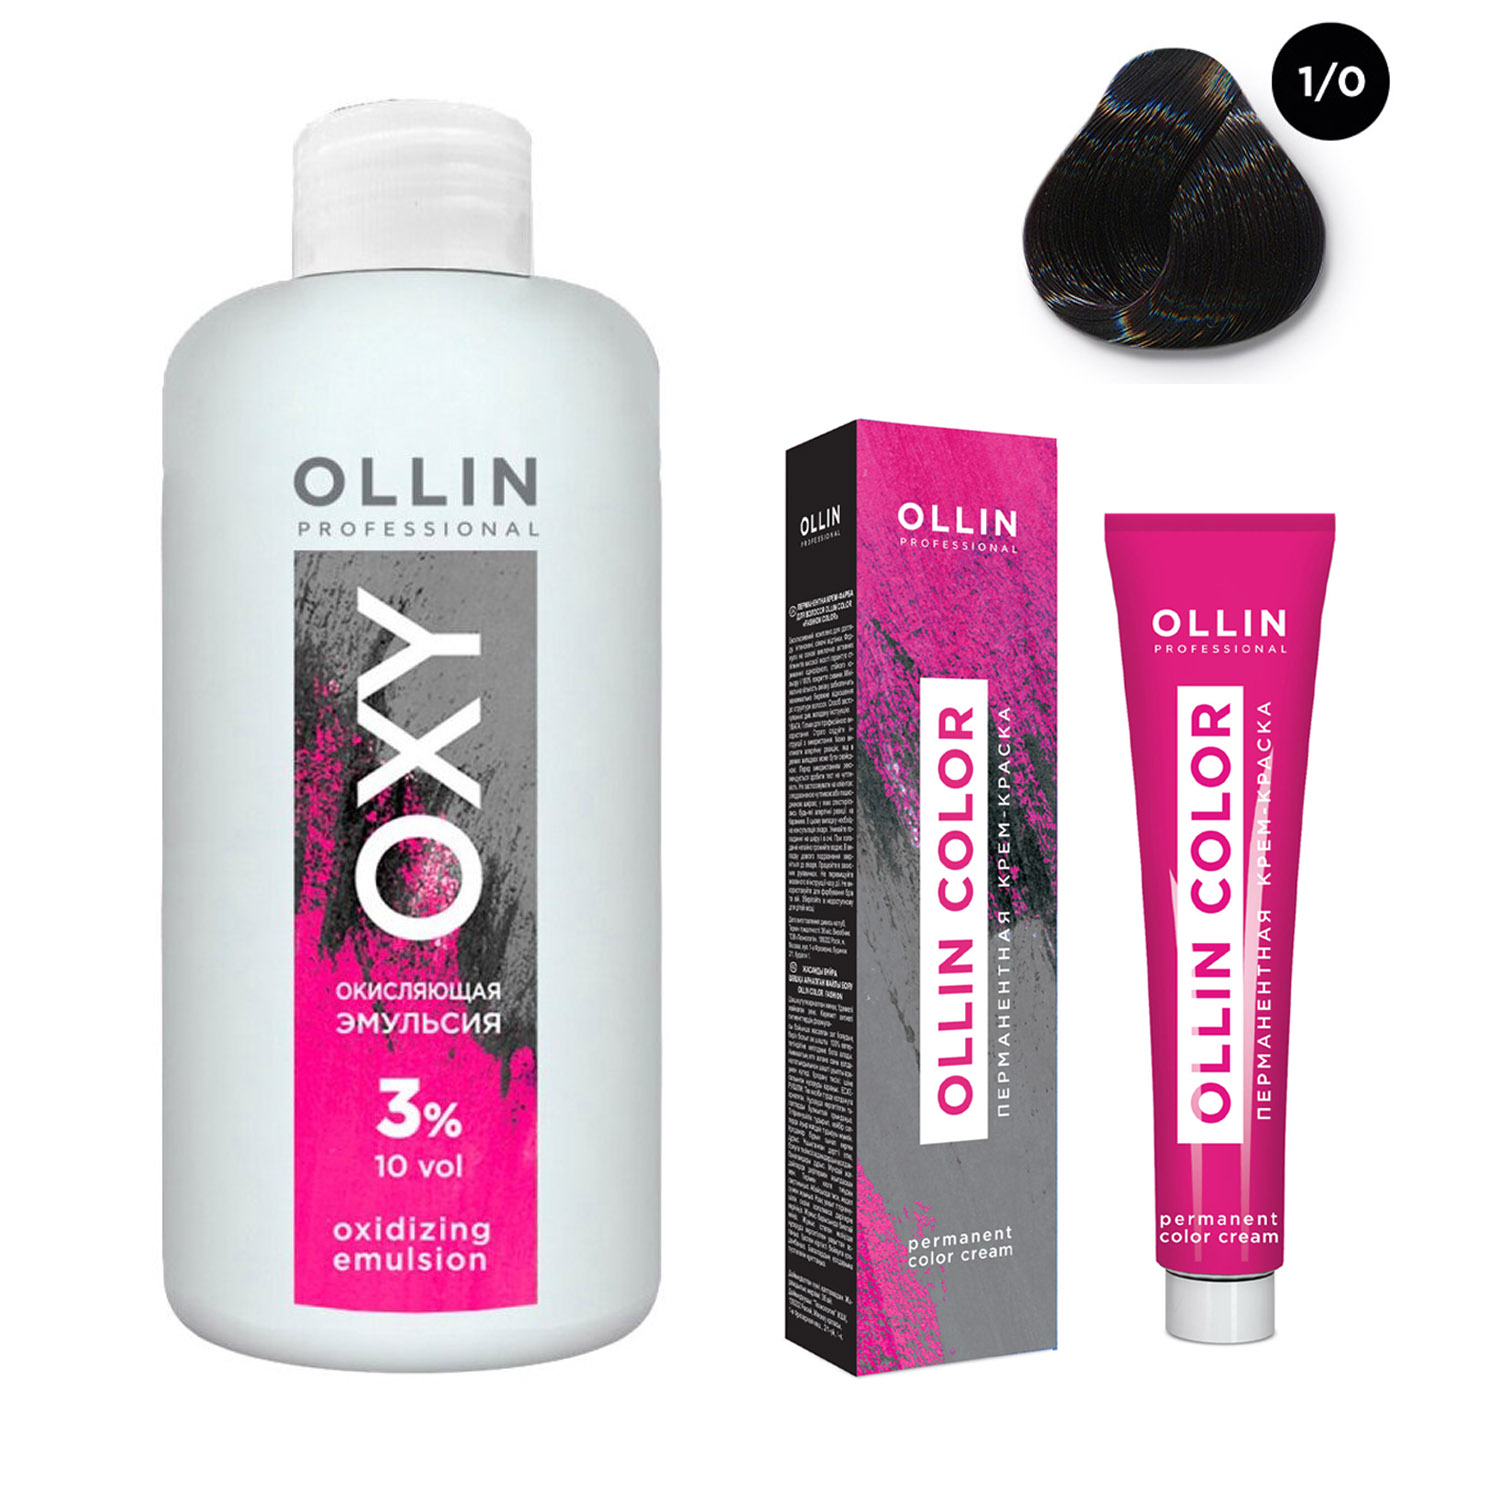 цена Ollin Professional Набор Перманентная крем-краска для волос Ollin Color оттенок 1/0 иссиня-черный 100 мл + Окисляющая эмульсия Oxy 3% 150 мл (Ollin Professional, Ollin Color)